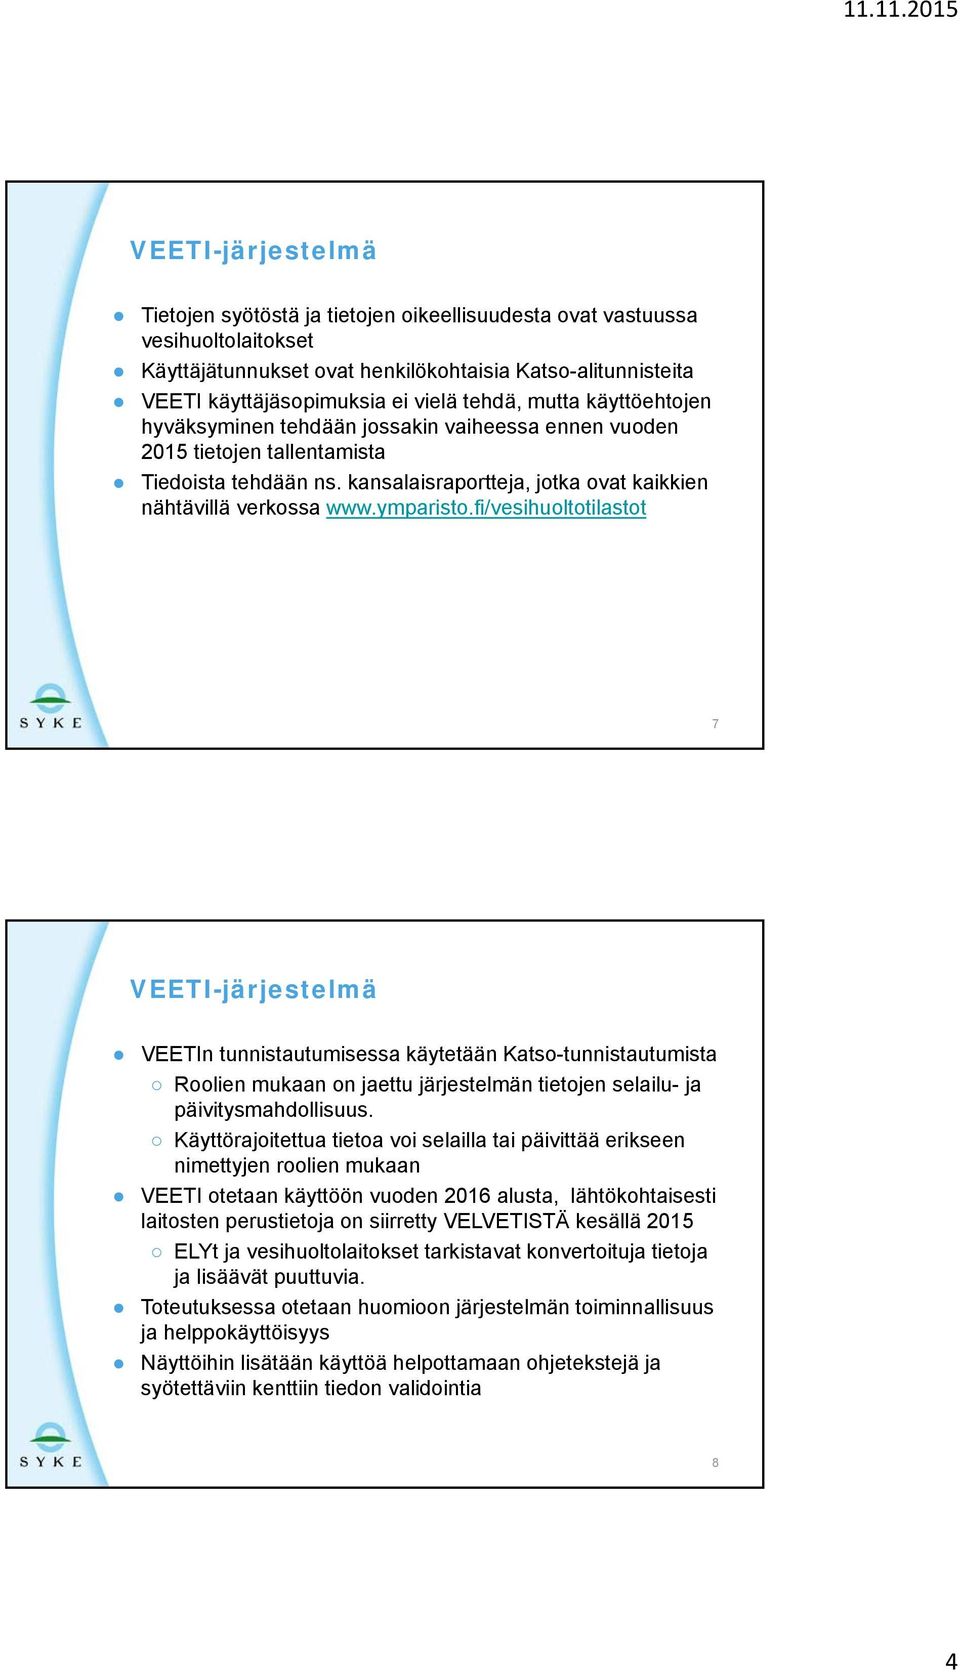 ymparisto.fi/vesihuoltotilastot 7 VEETI-järjestelmä VEETIn tunnistautumisessa käytetään Katso-tunnistautumista Roolien mukaan on jaettu järjestelmän tietojen selailu- ja päivitysmahdollisuus.